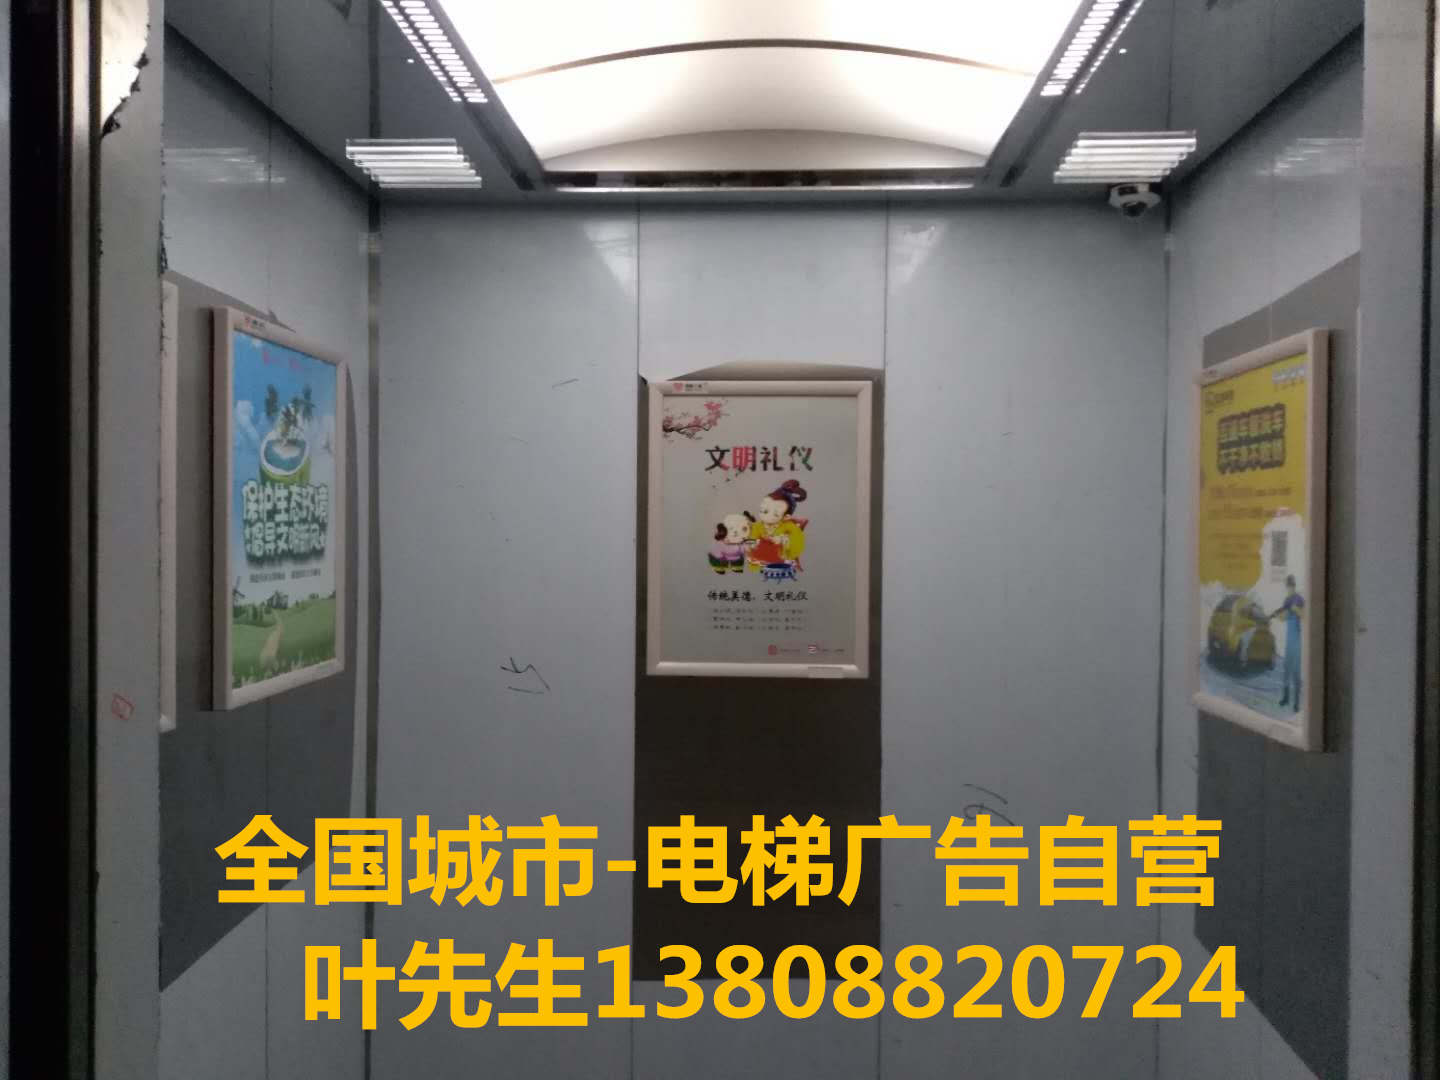 全国城市电梯广告|上海市电梯广告公司